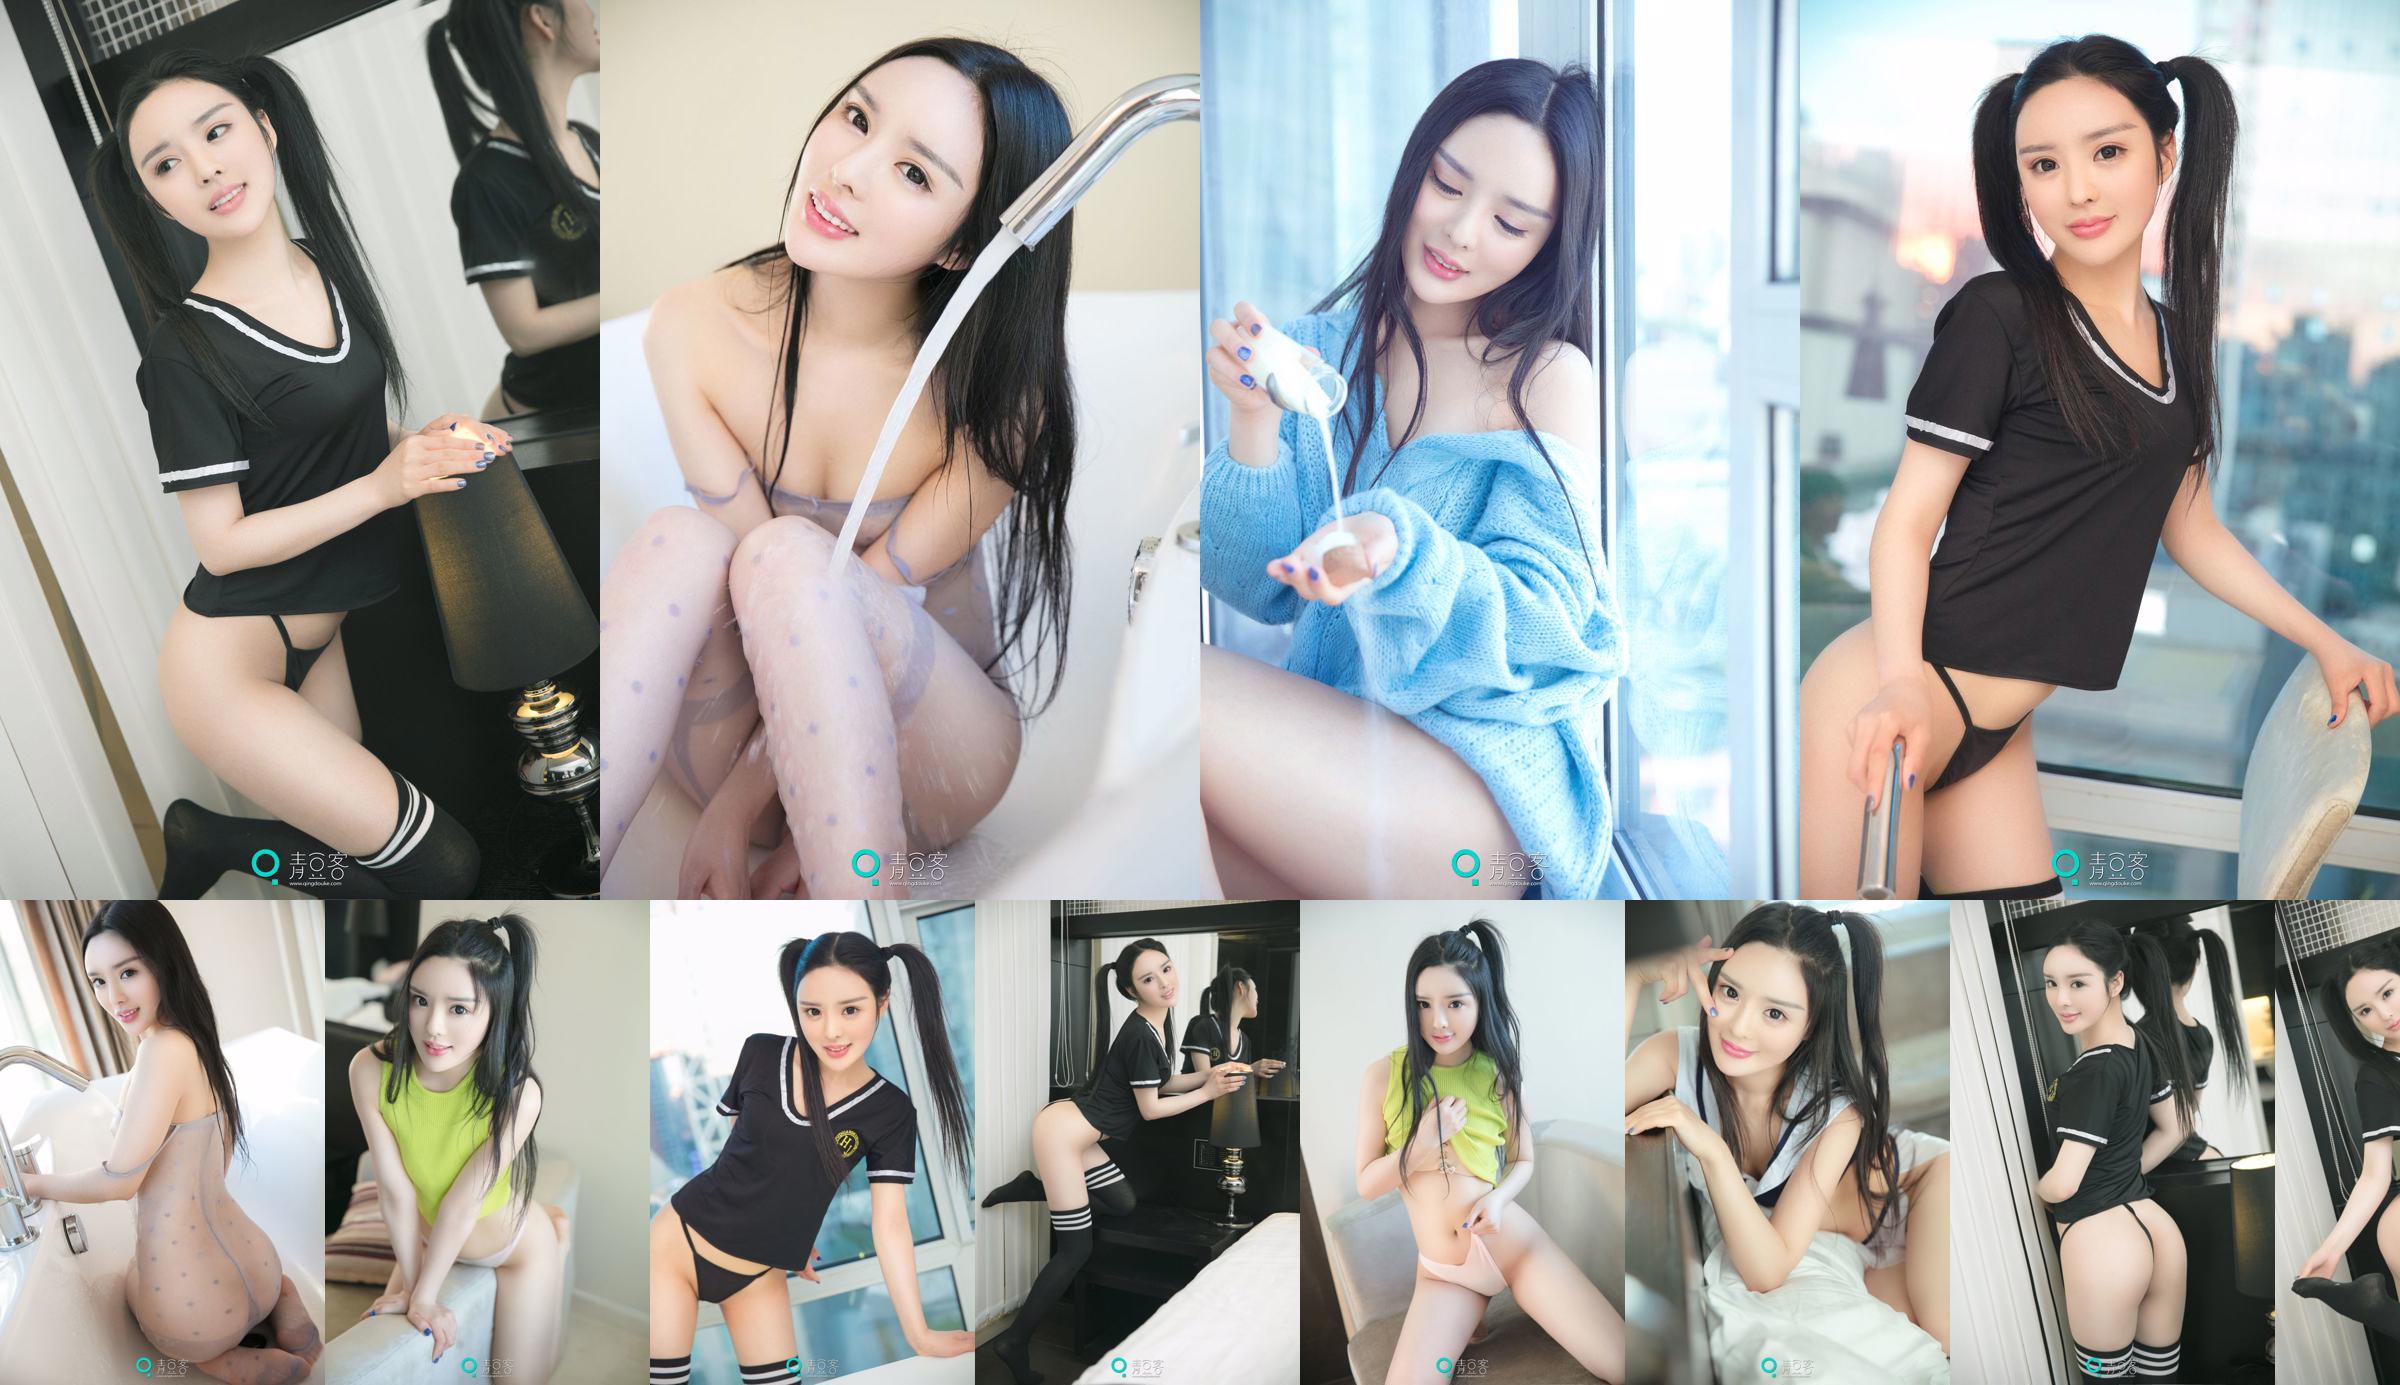 Xiao Di "Sexy Sweater + Uniform" [Qing Dou Ke] No.087d7f Page 5